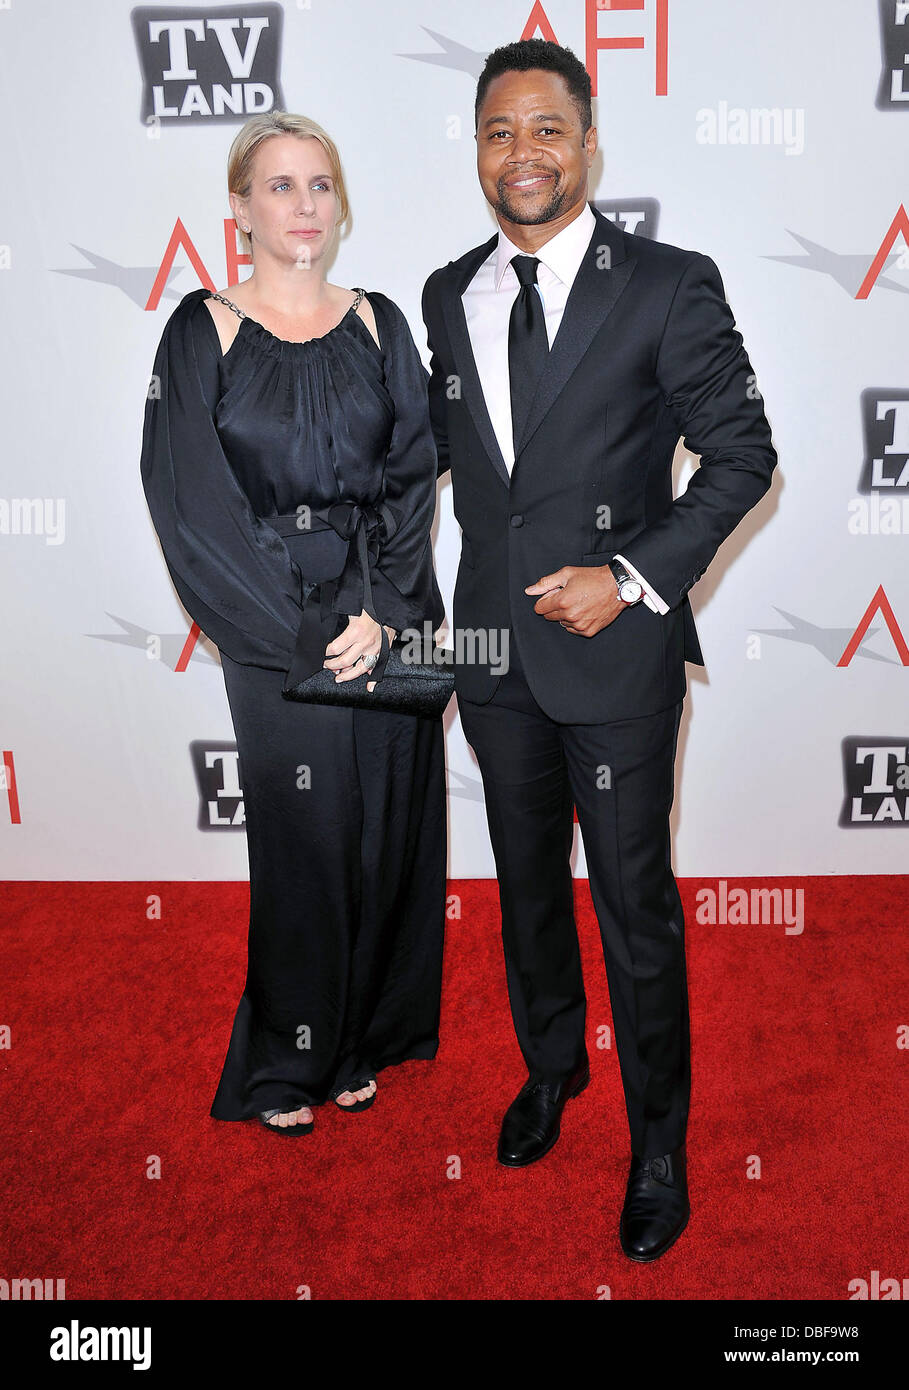 Cuba Gooding Jr. e moglie Sara 2011 'TV Land presenta: AFI Life Achievement Award in onore di Morgan Freeman" tenutasi presso Sony Studios di Los Angeles, California - 09.06.11 Foto Stock